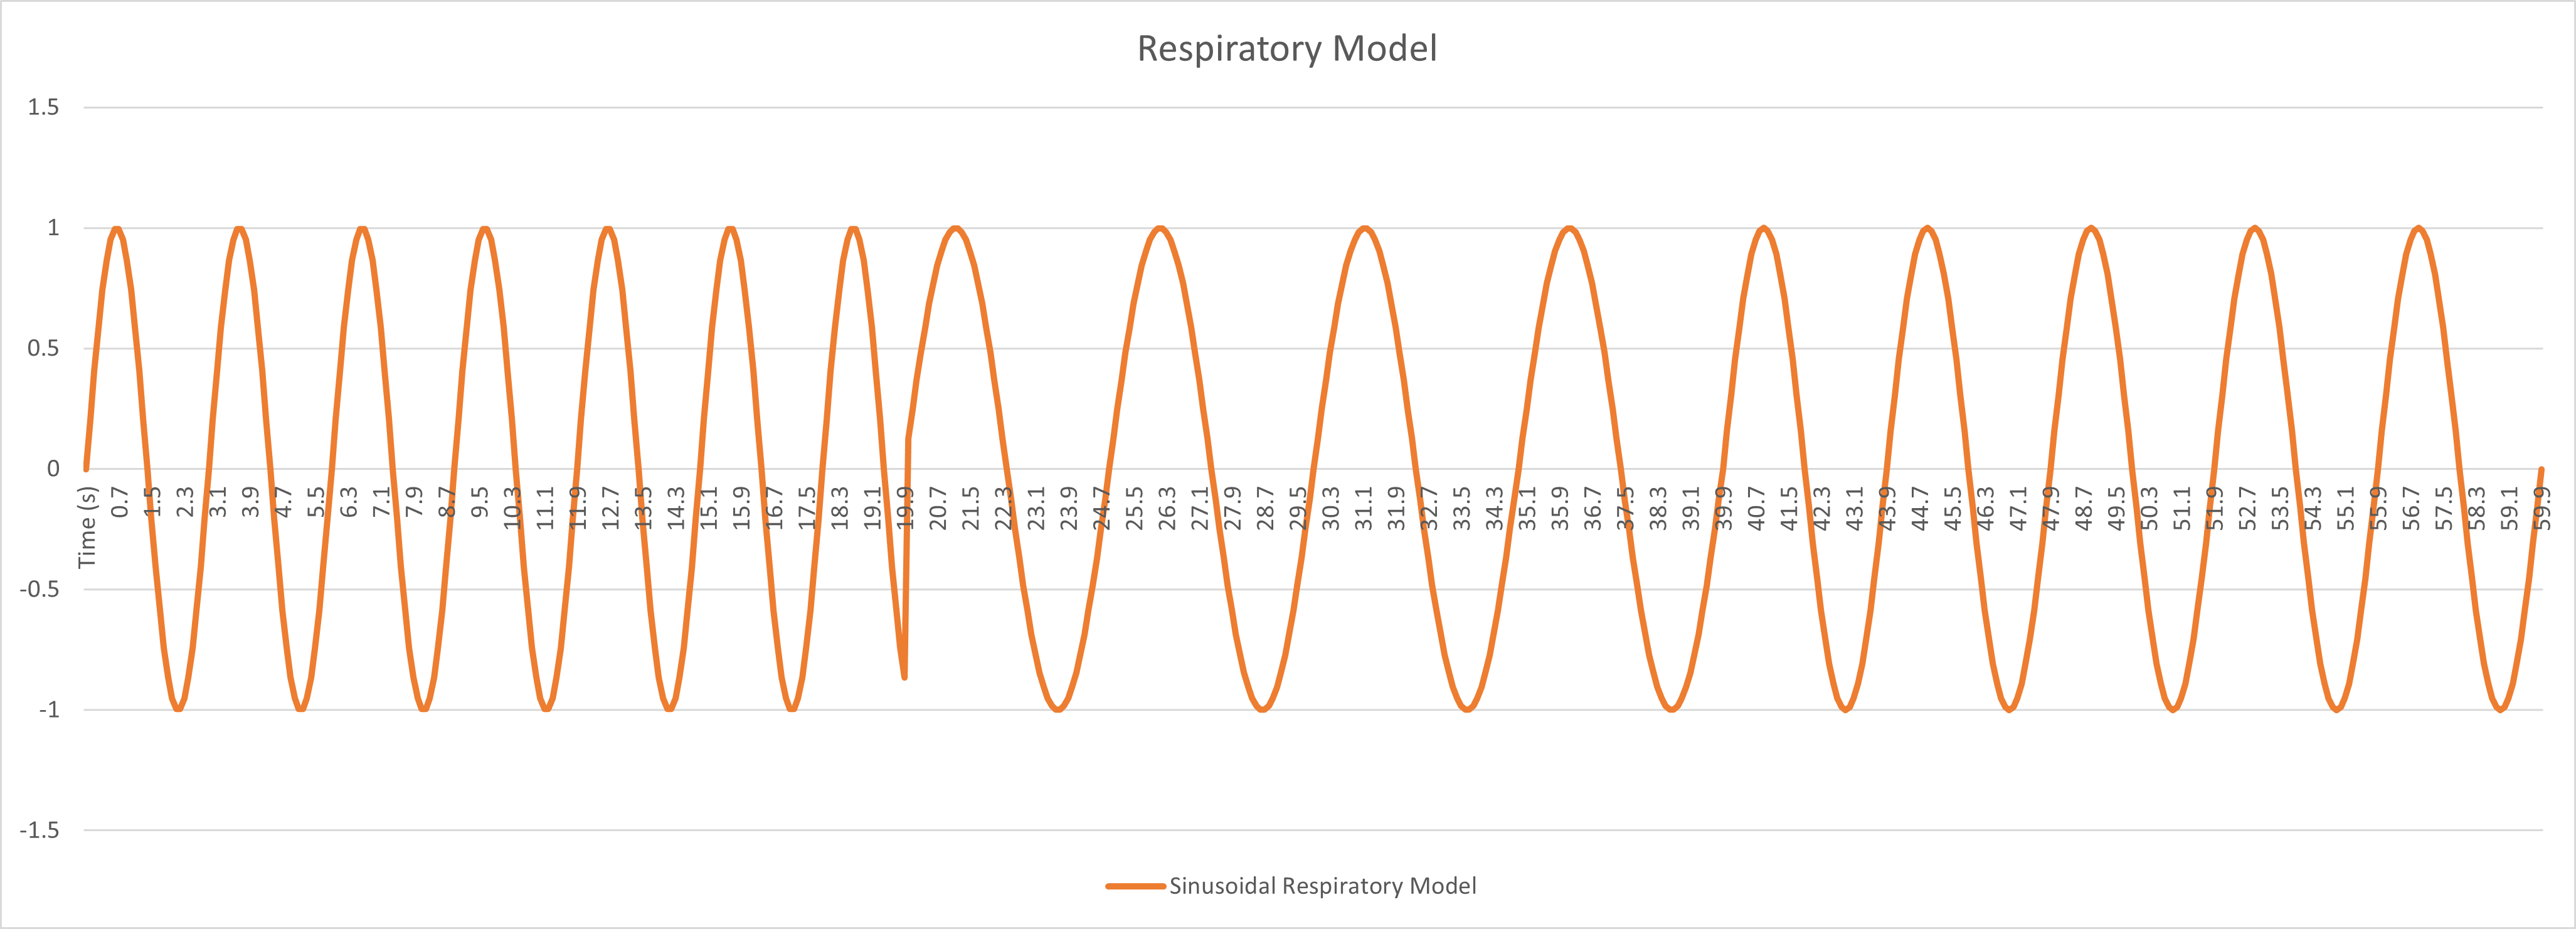 Respiratory Model as a Sinusoidal Graph